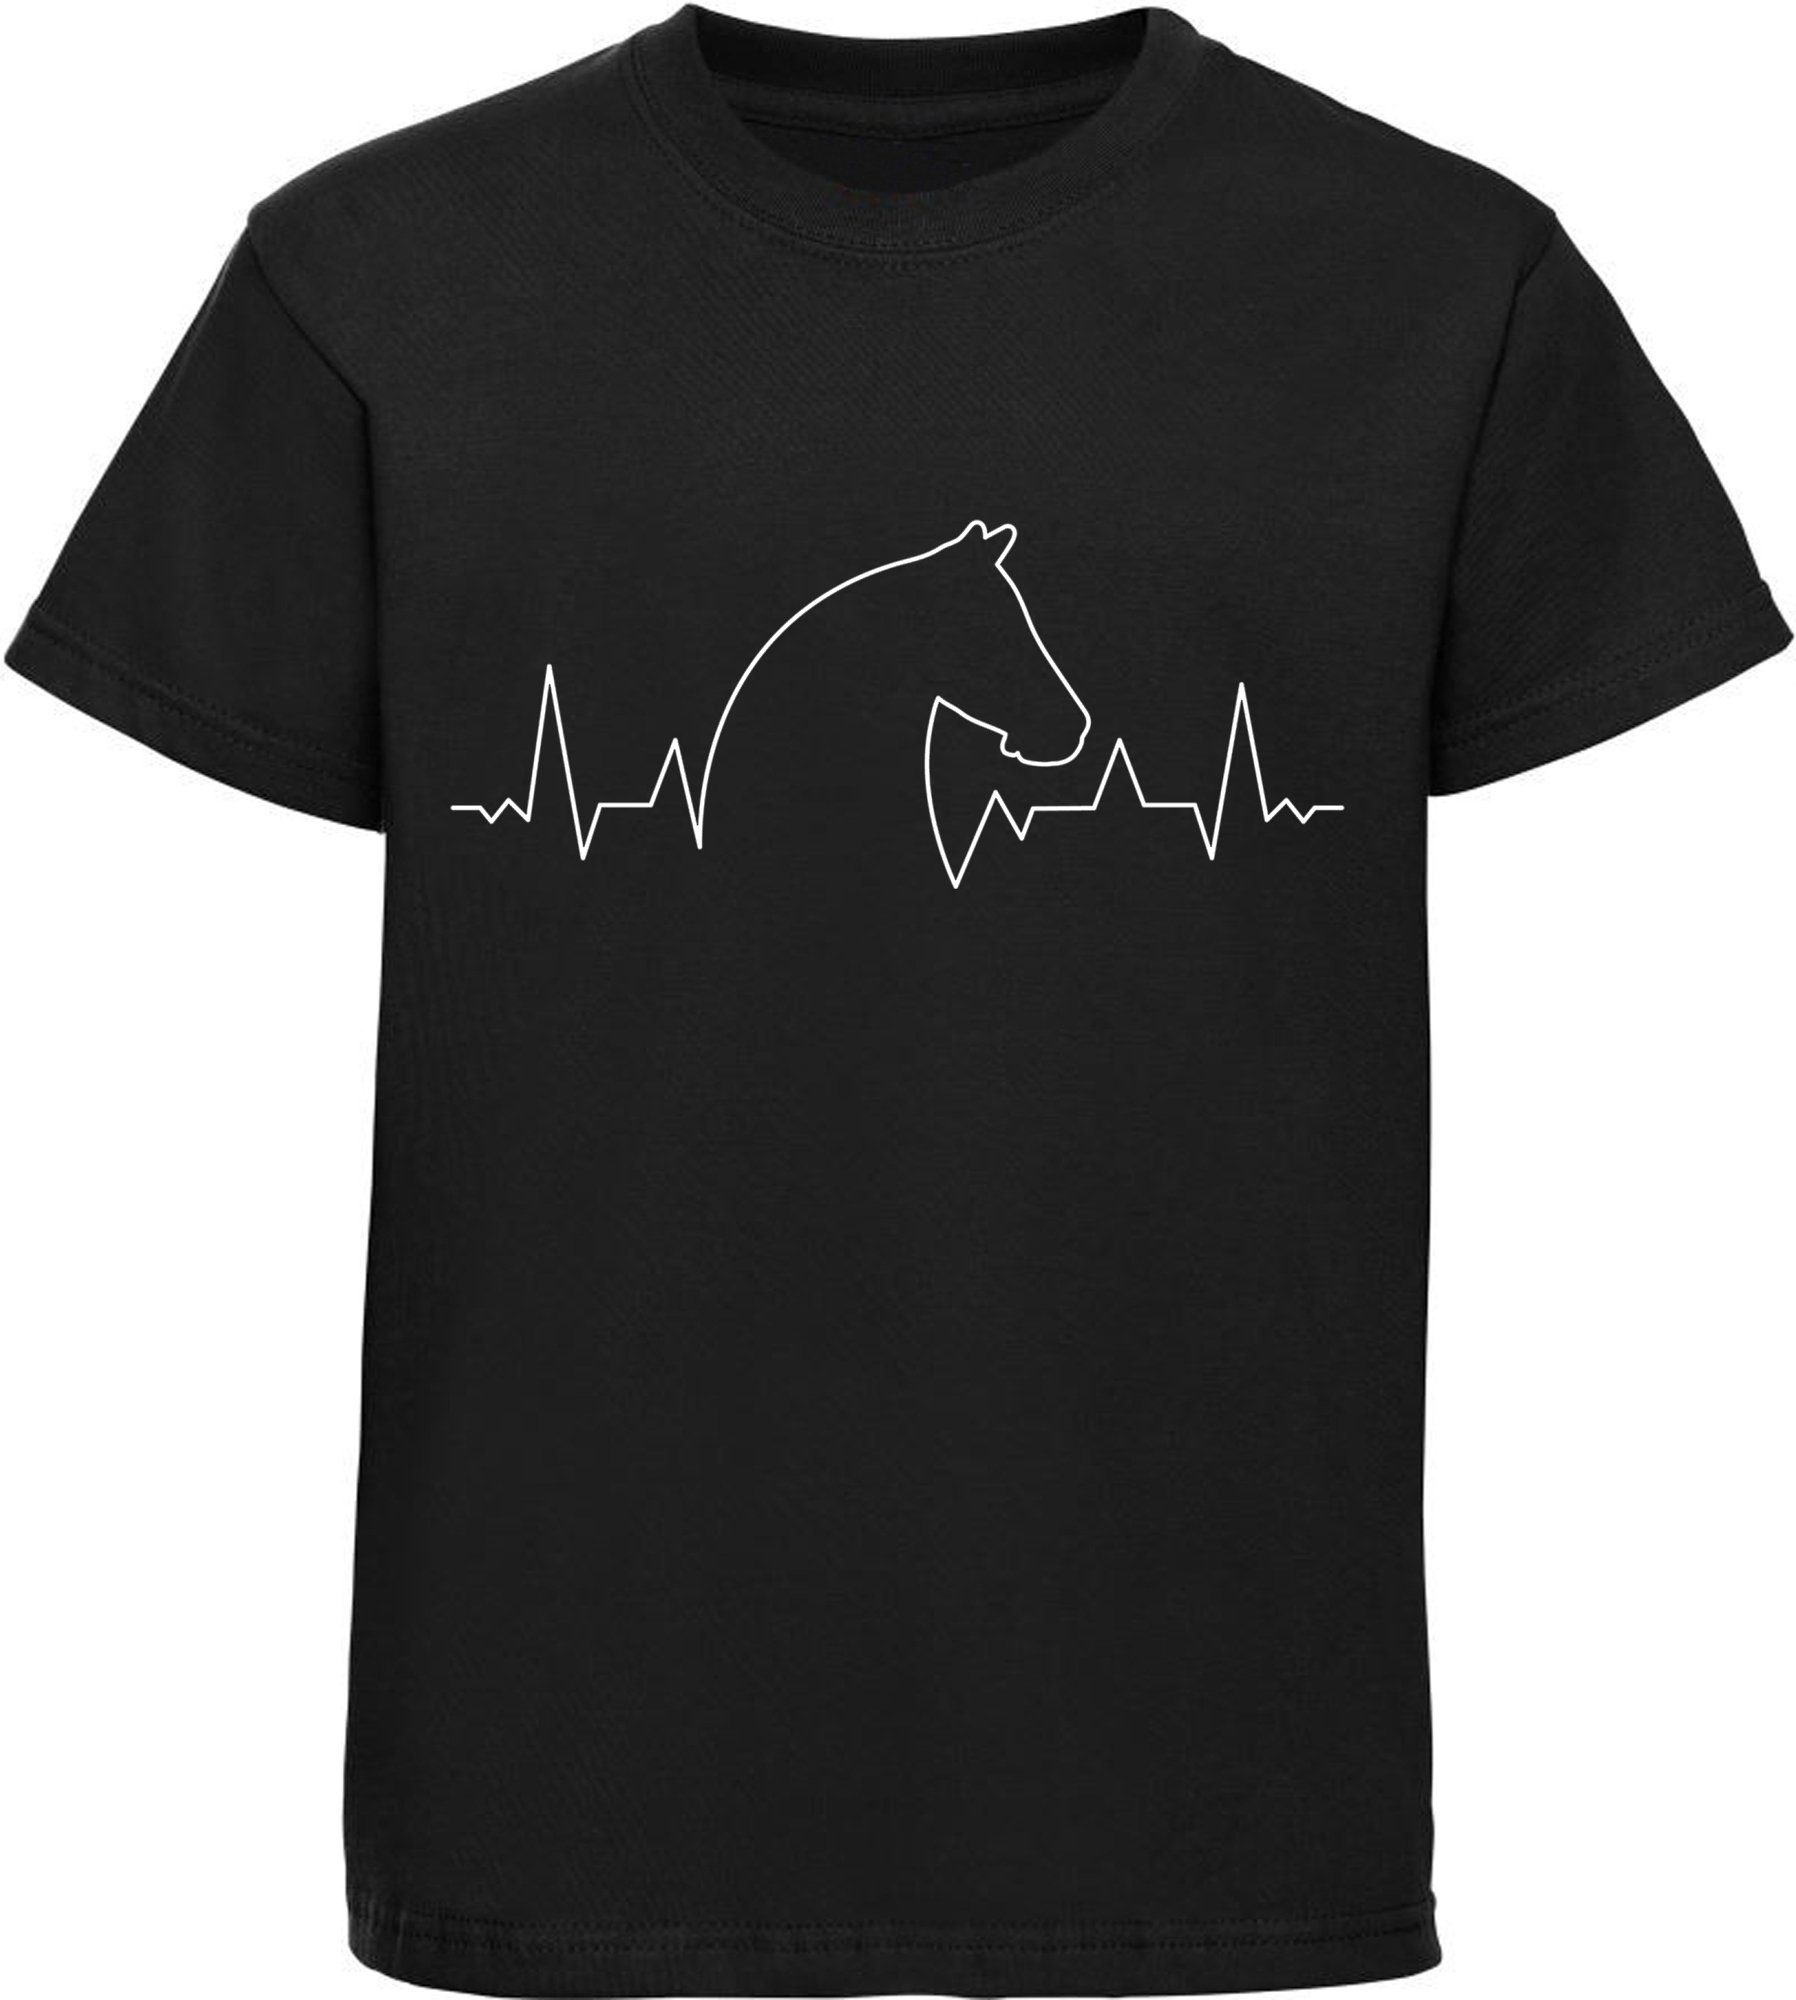 MyDesign24 Print-Shirt bedrucktes Kinder T-Shirt Herzschlaglinie mit Pferdekopf Baumwollshirt mit Aufdruck, i154 schwarz